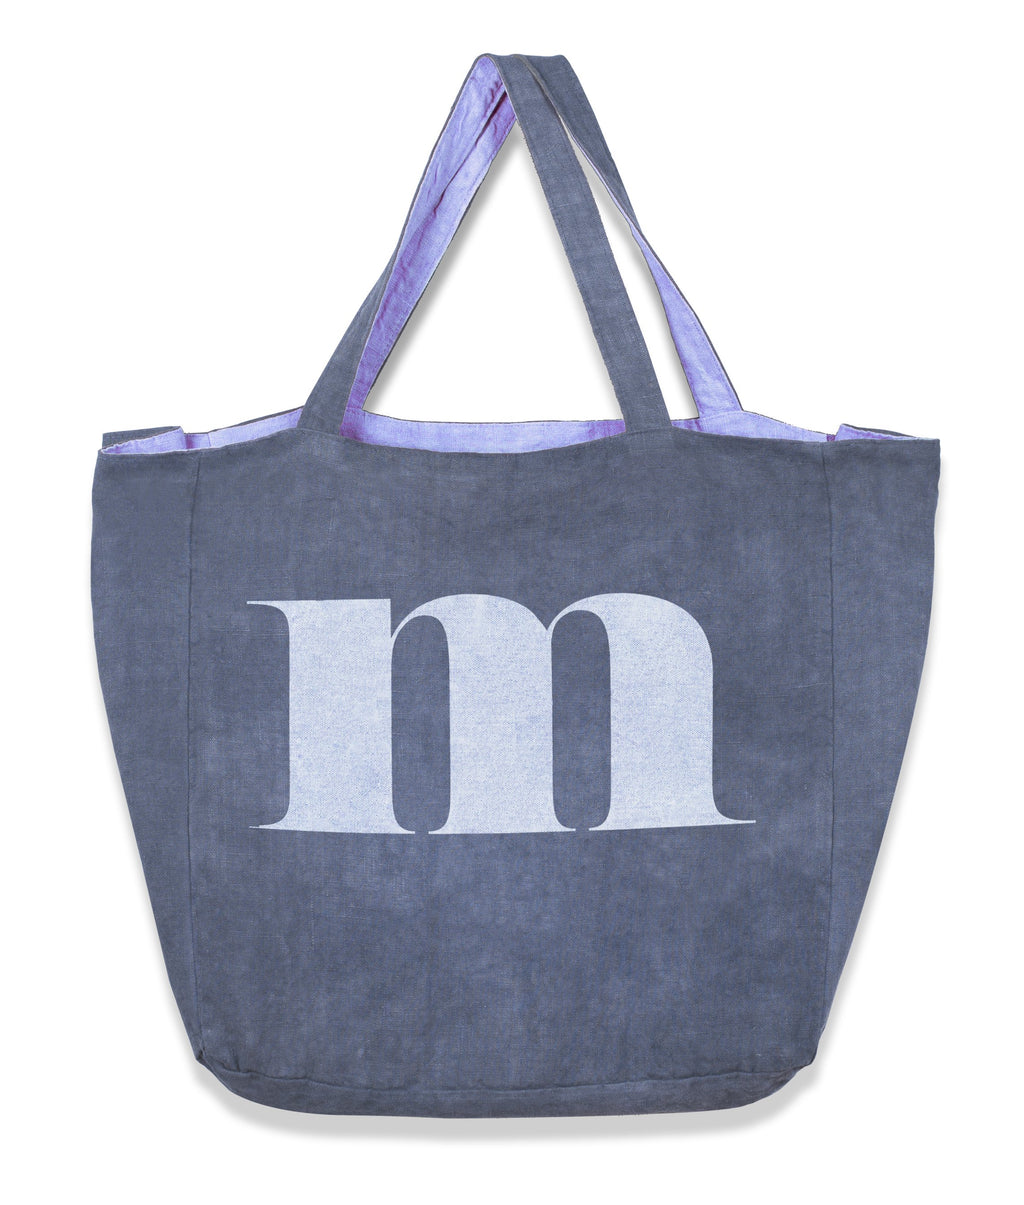 Monogram Tote Bag in Heavy Metal Blue